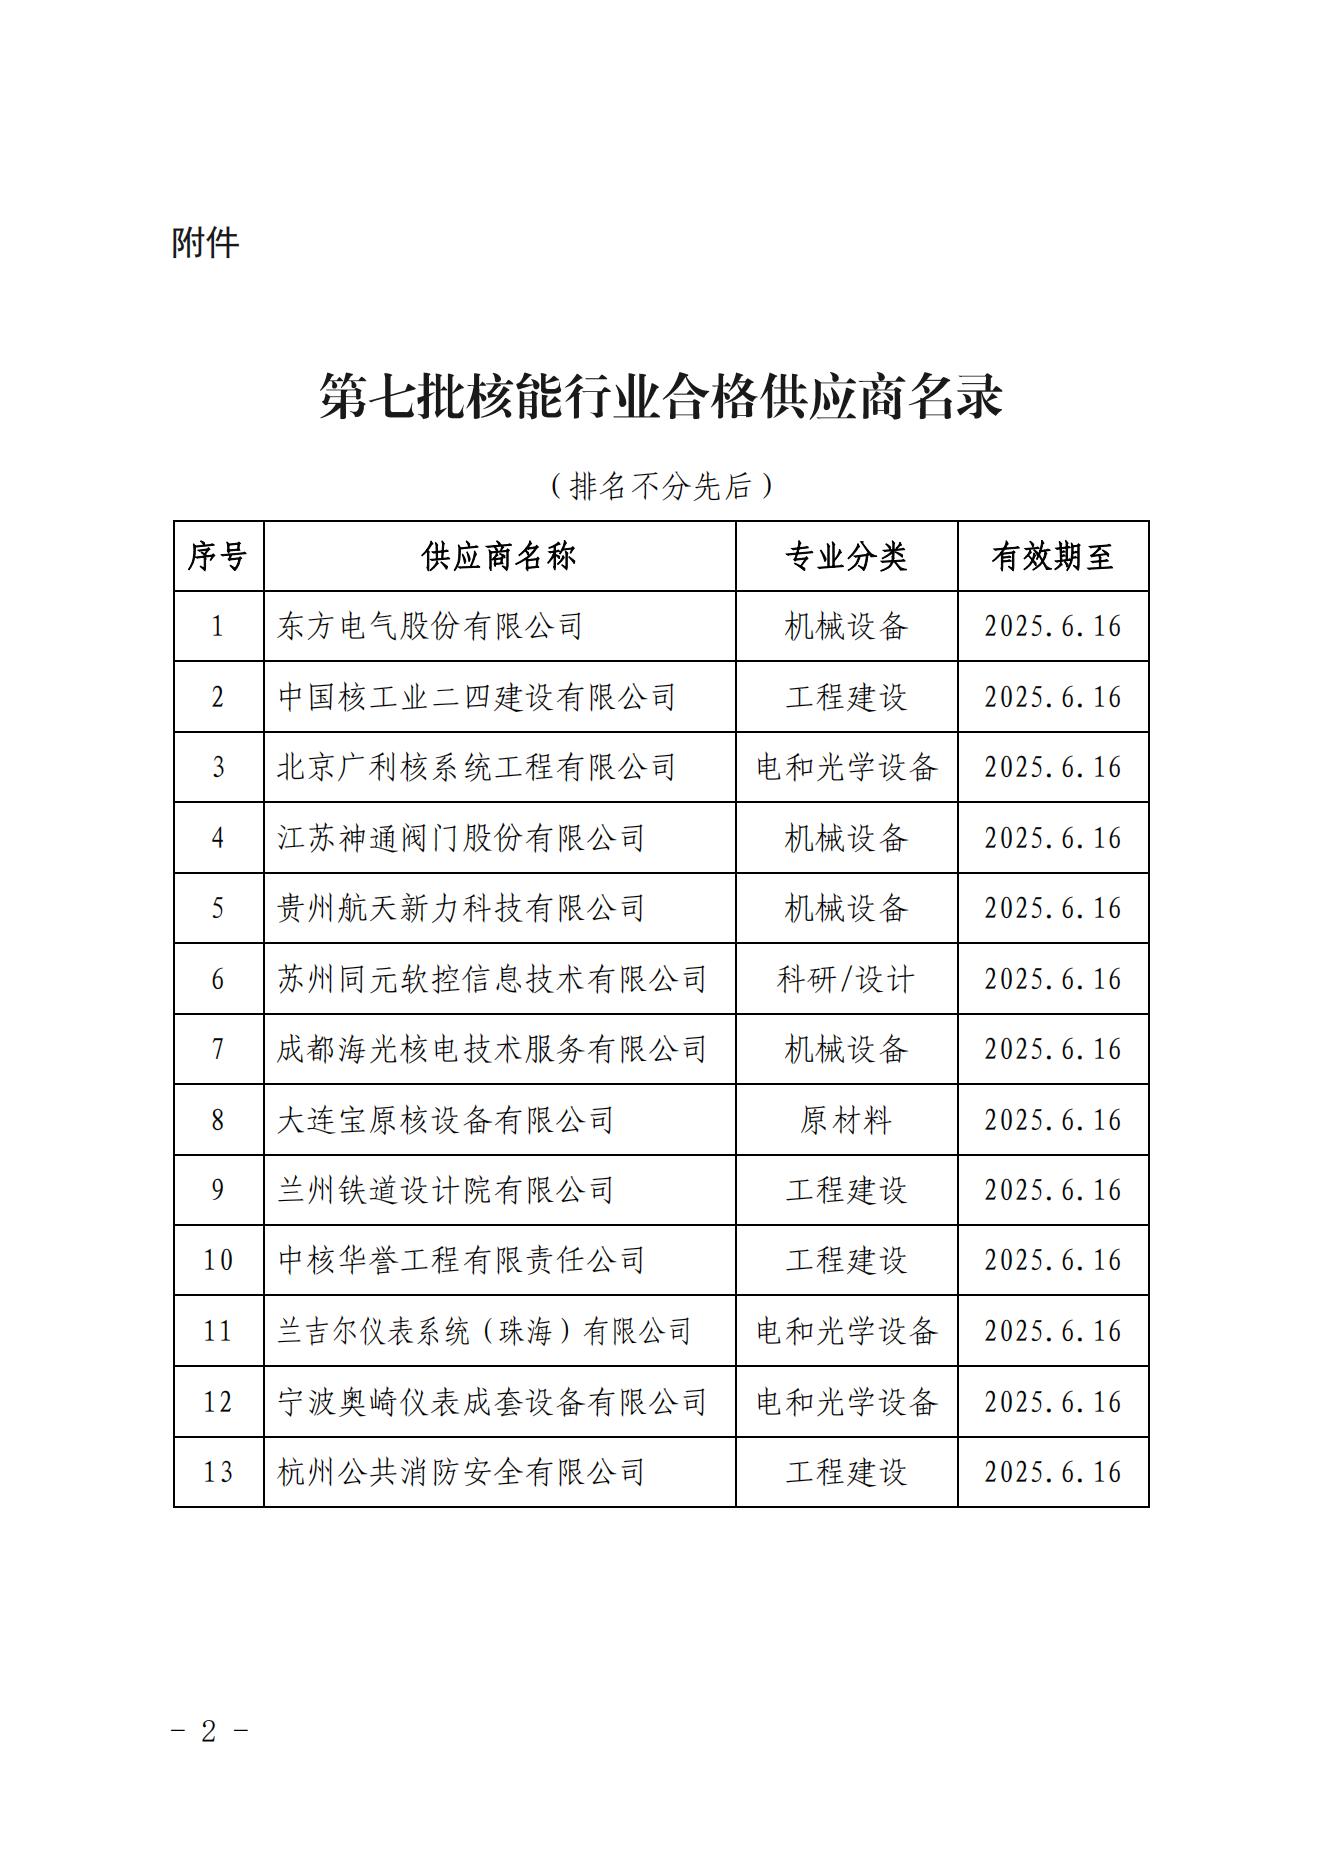 关于发布中国核能行业协会核能行业第七批合格供应商名录的公告_01.jpg